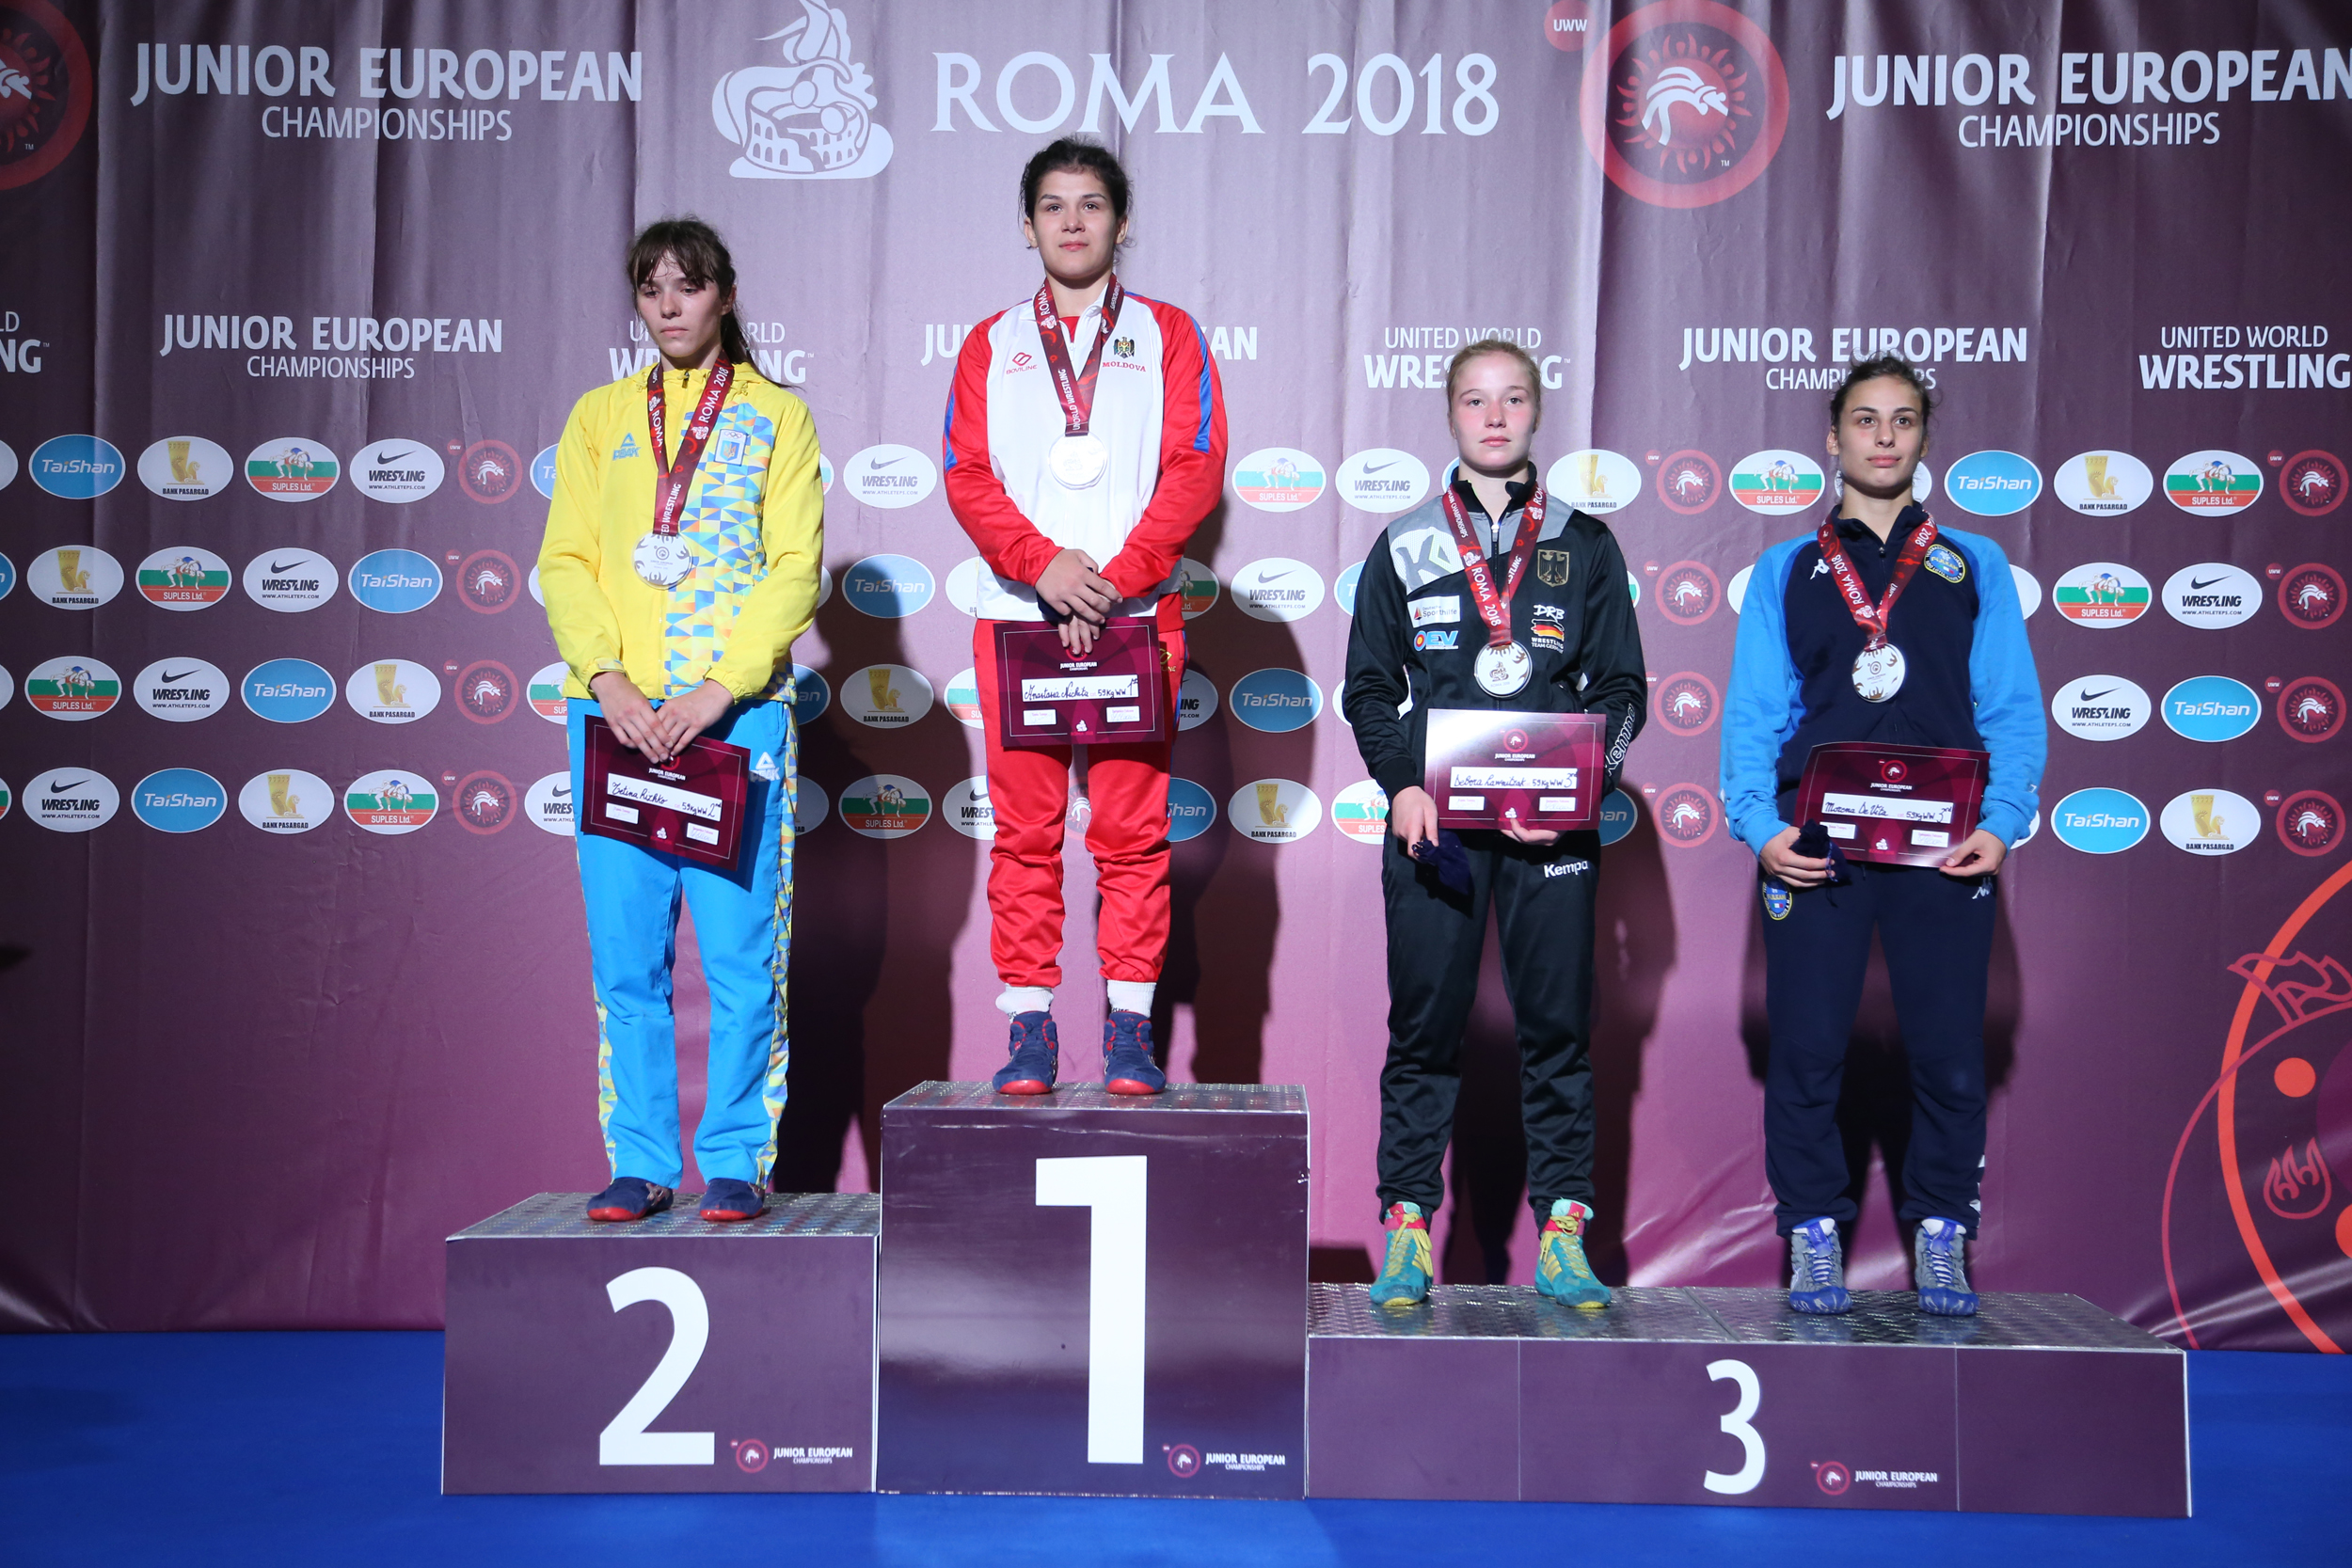 Europei Juniores 2018: Liuzzi e De Vita di bronzo! Domani Rinaldi in finale per il titolo, Esposito per il terzo posto